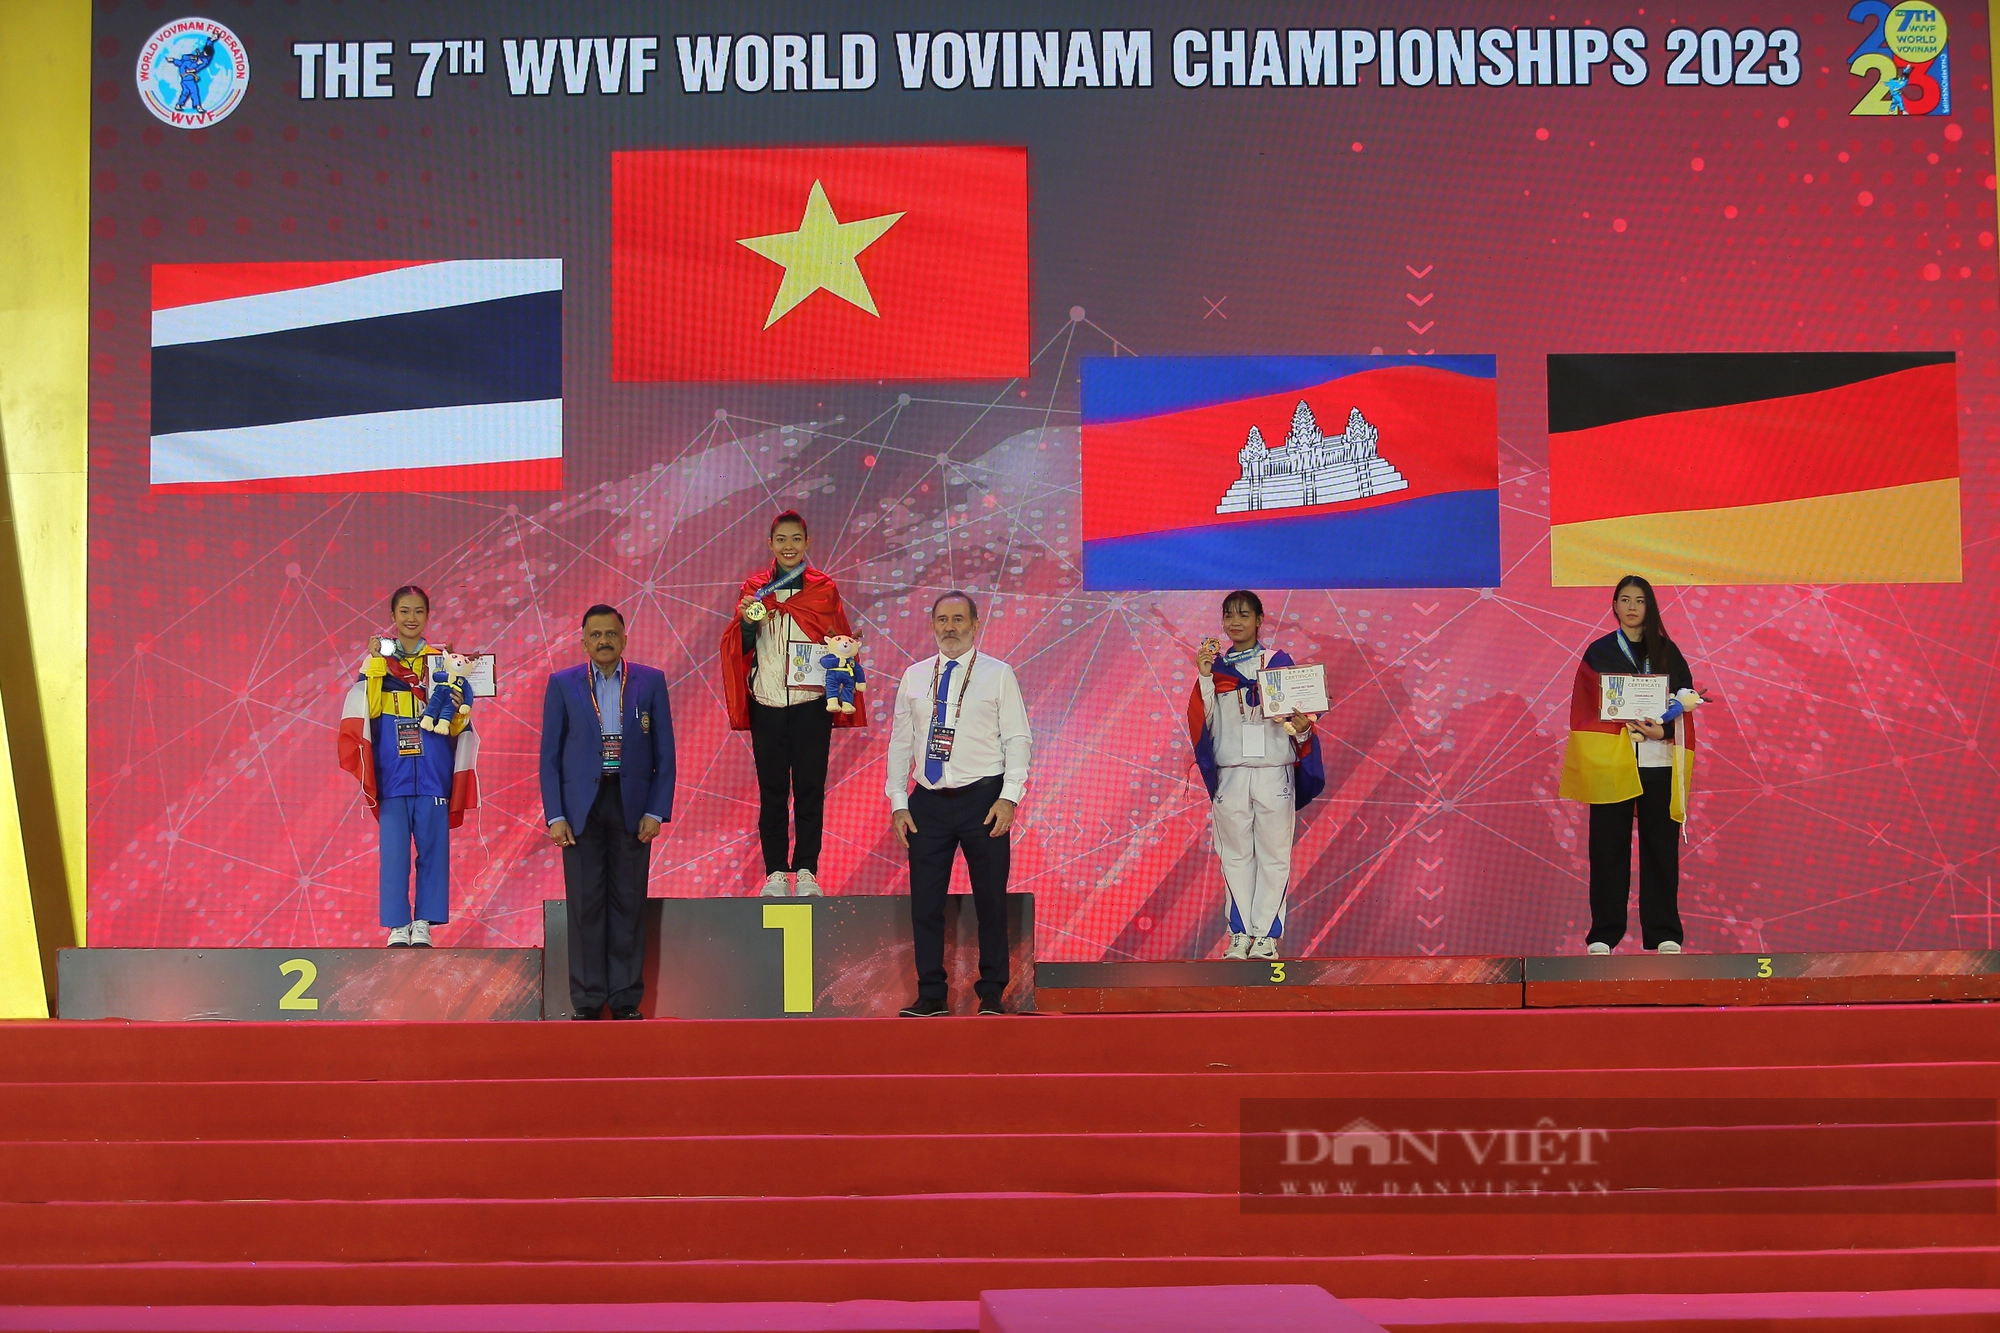 Cô giáo Tiểu học trở thành nhà vô địch thế giới Vovinam - Ảnh 4.